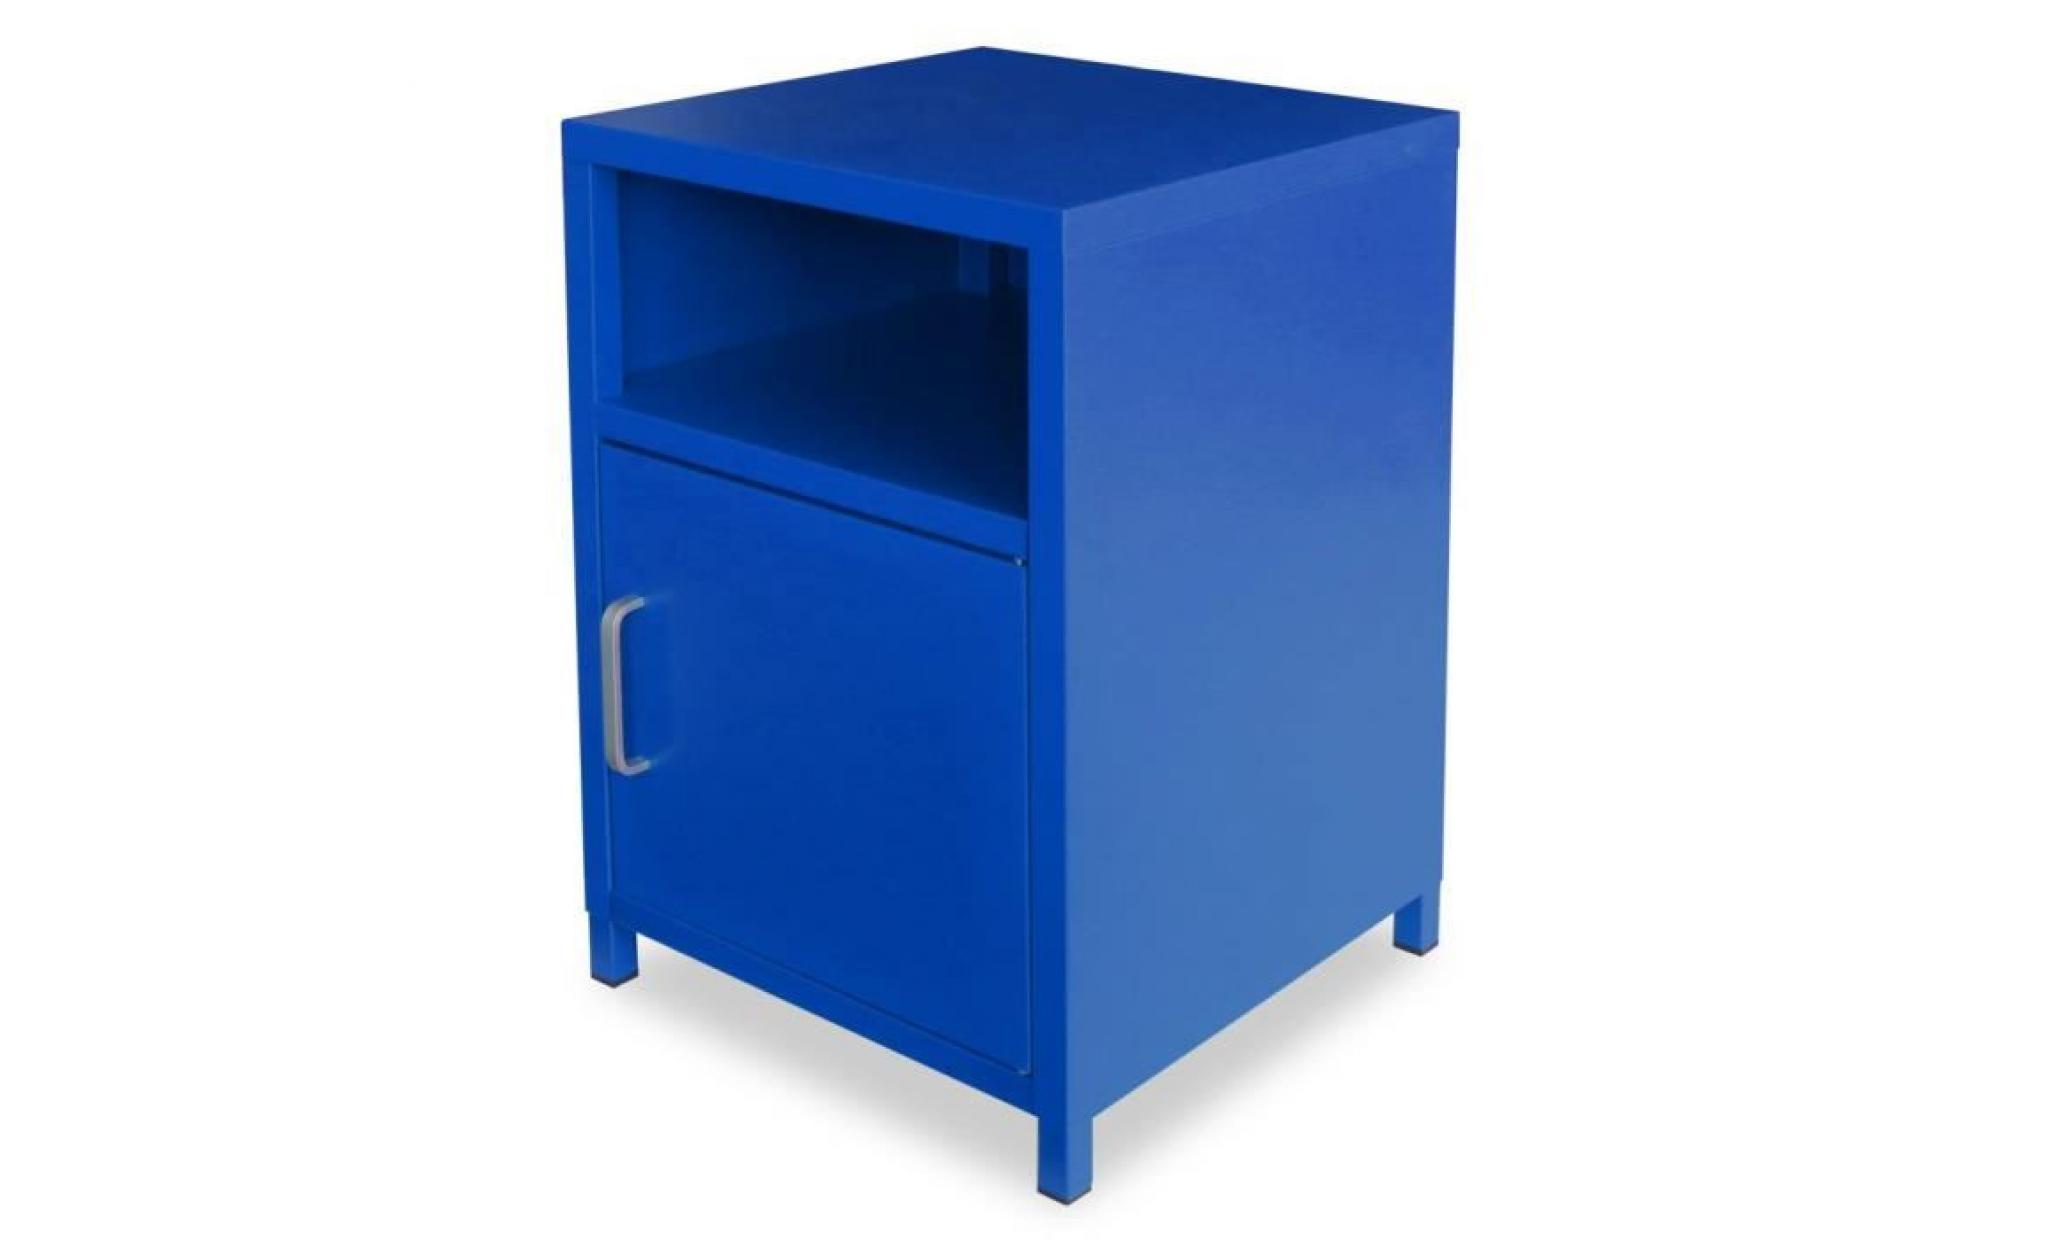 chevet   table de chevet   table de nuit   meuble de chevet   armoire de chevet 35 x 35 x 51 cm bleu